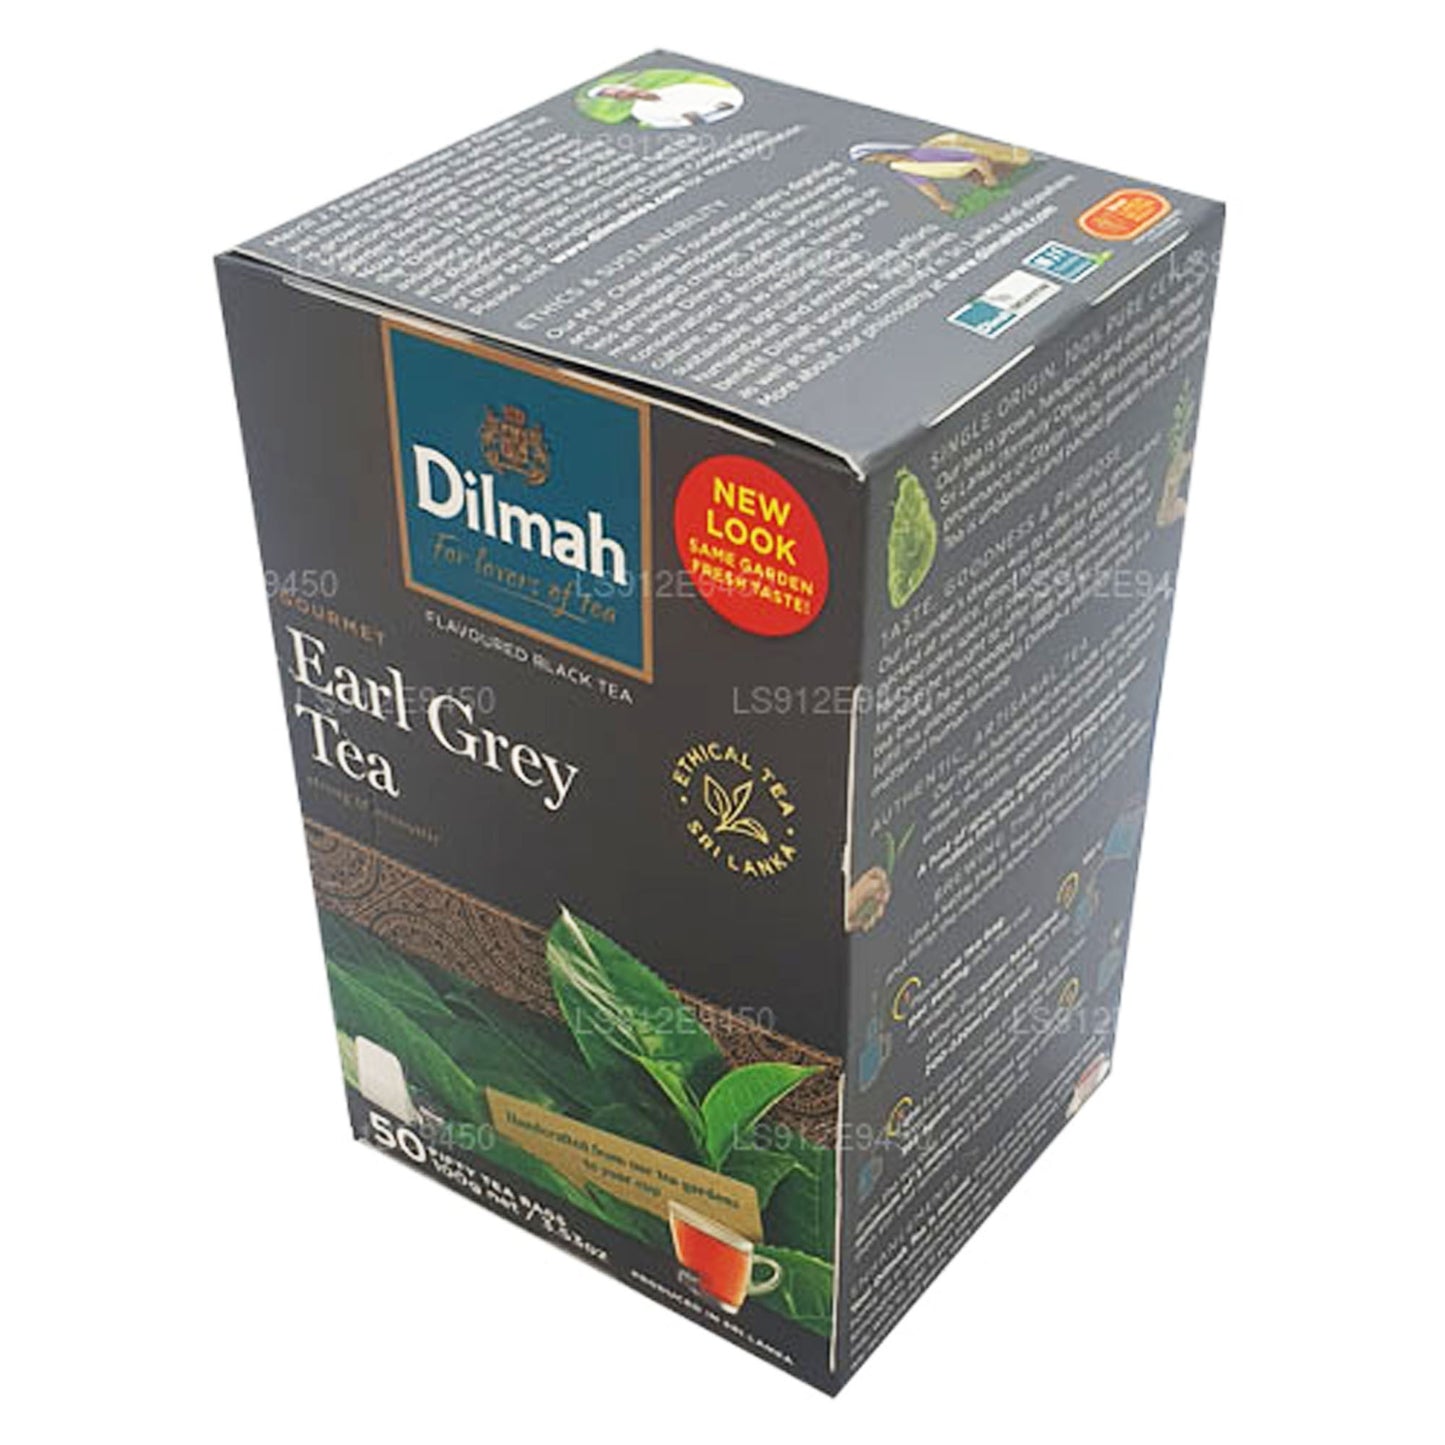 Dilmah Earl Grey 50 Çay Poşetleri (100g)